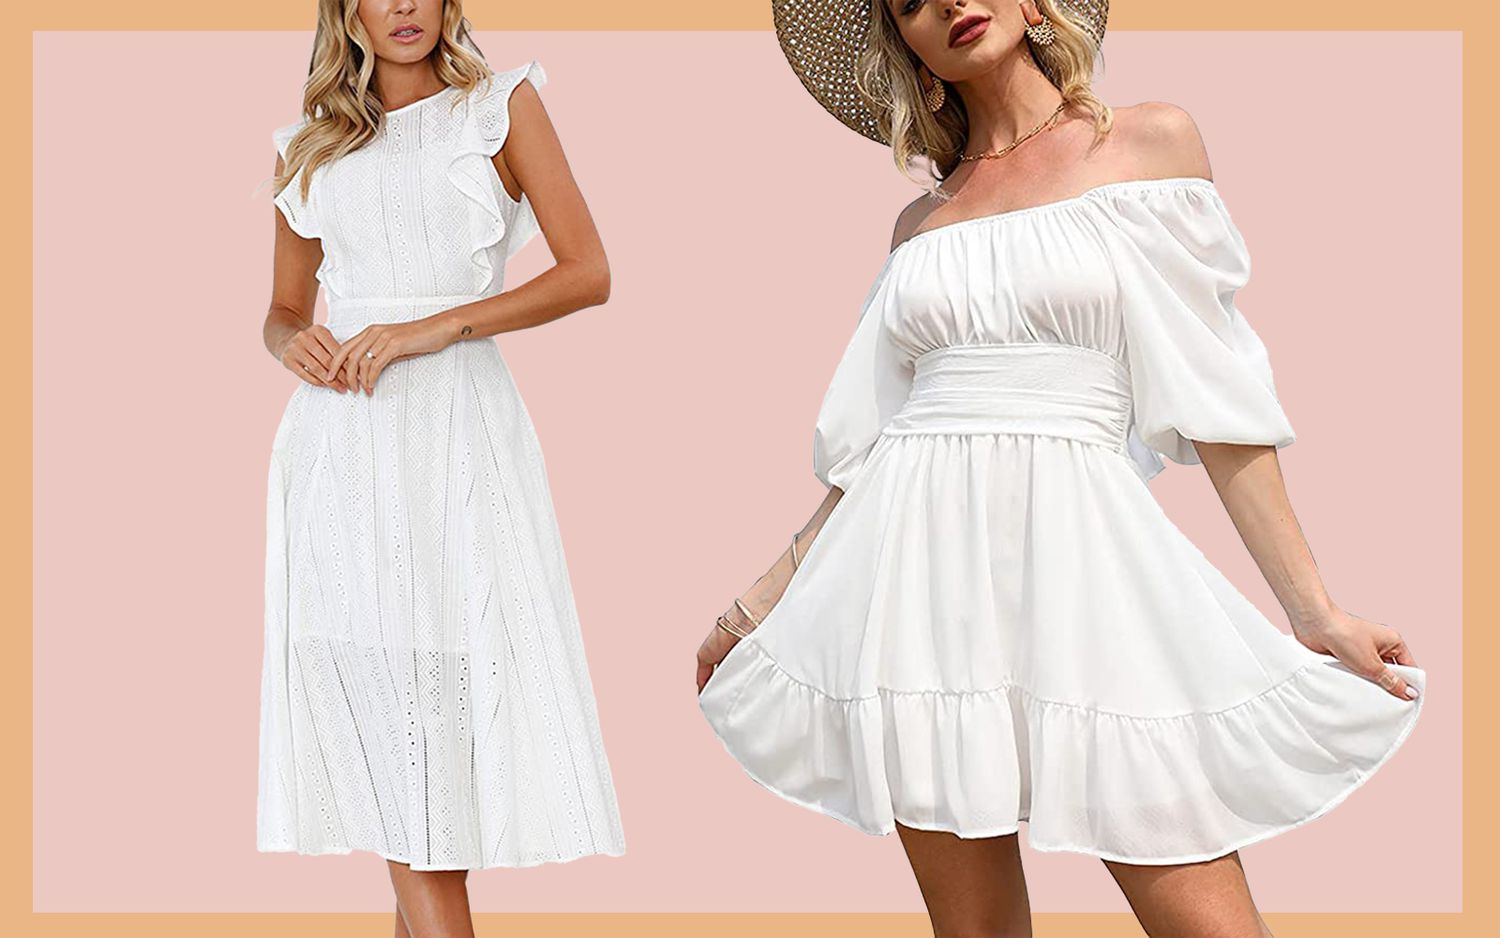 Countless Options Modern White Flower Girl Dress